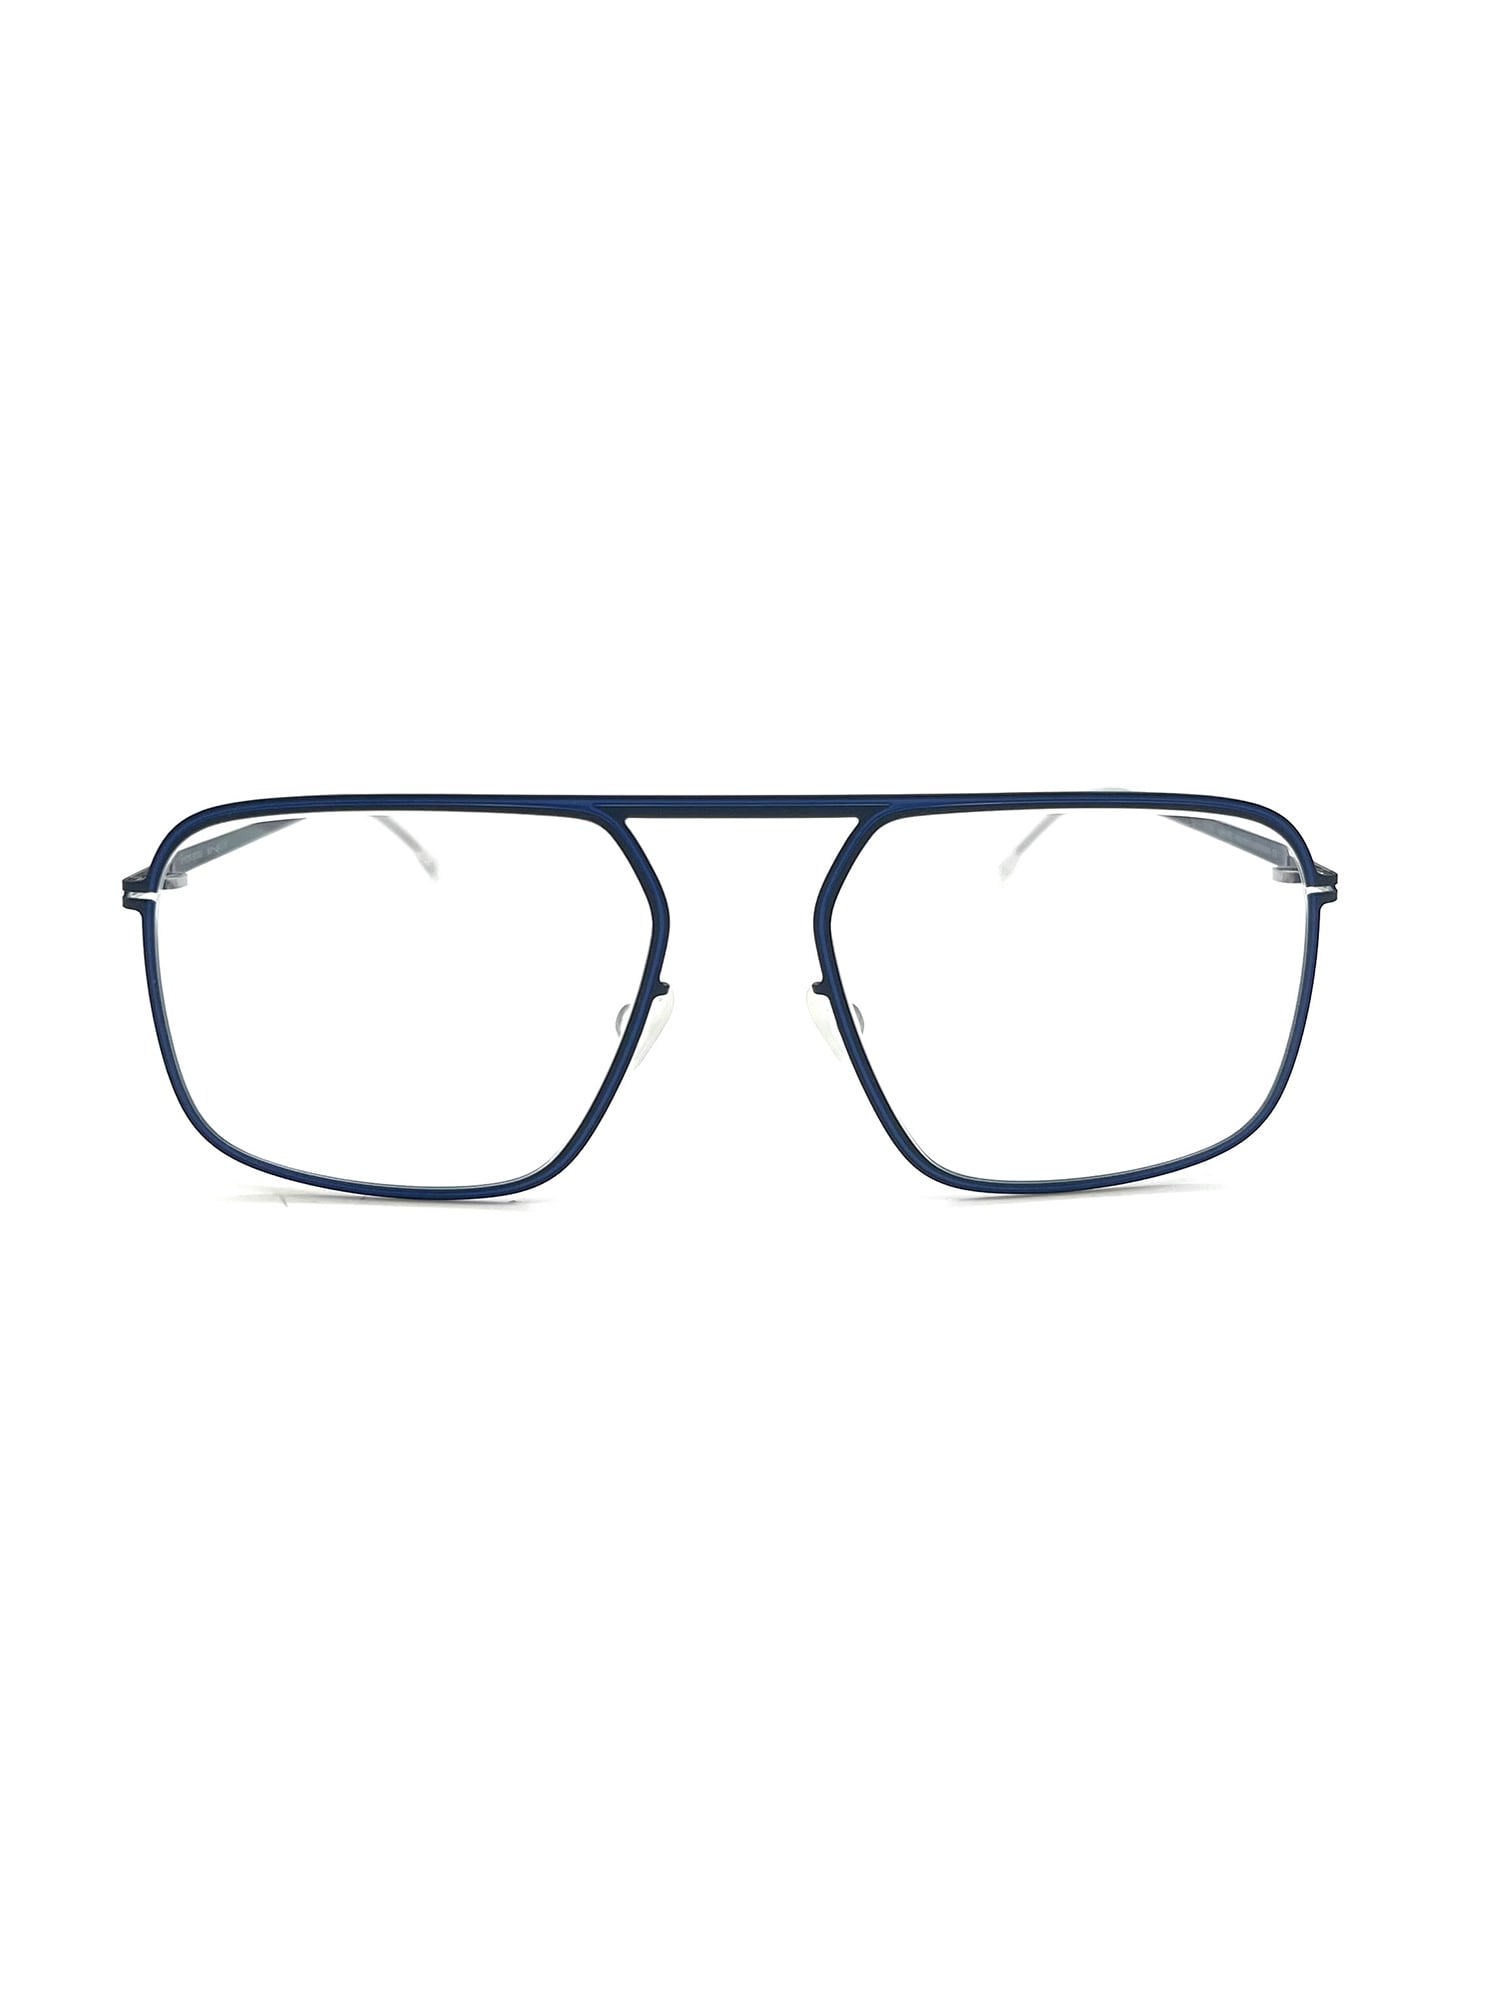 Mykita Studio 6.8 Eyewear In Navy/yale Blue